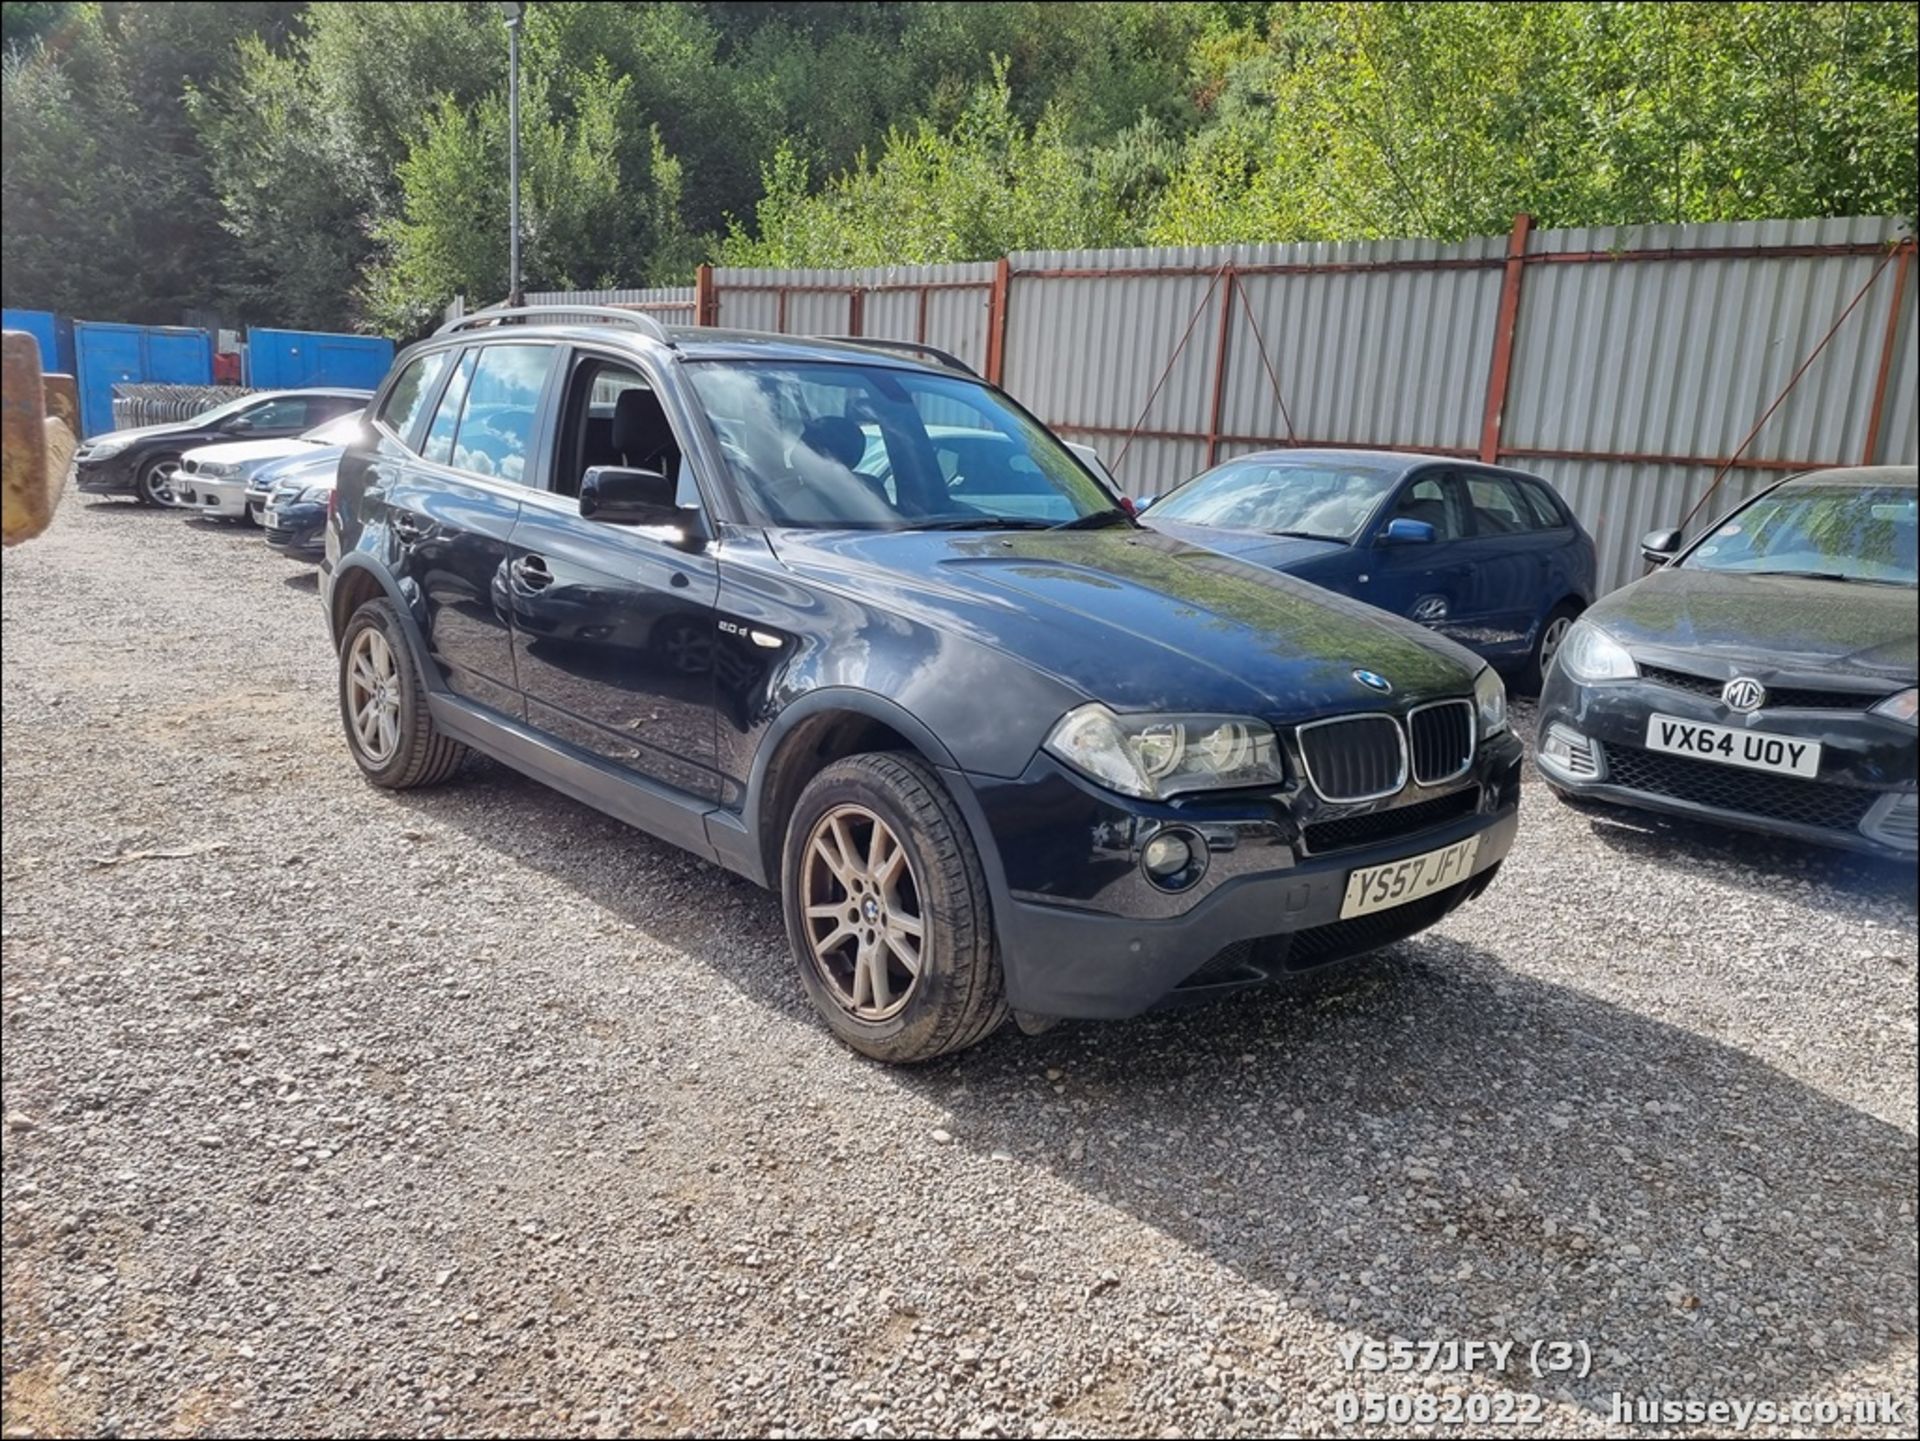 08/57 BMW X3 SE - 1995cc 5dr Estate (Black) - Image 3 of 29